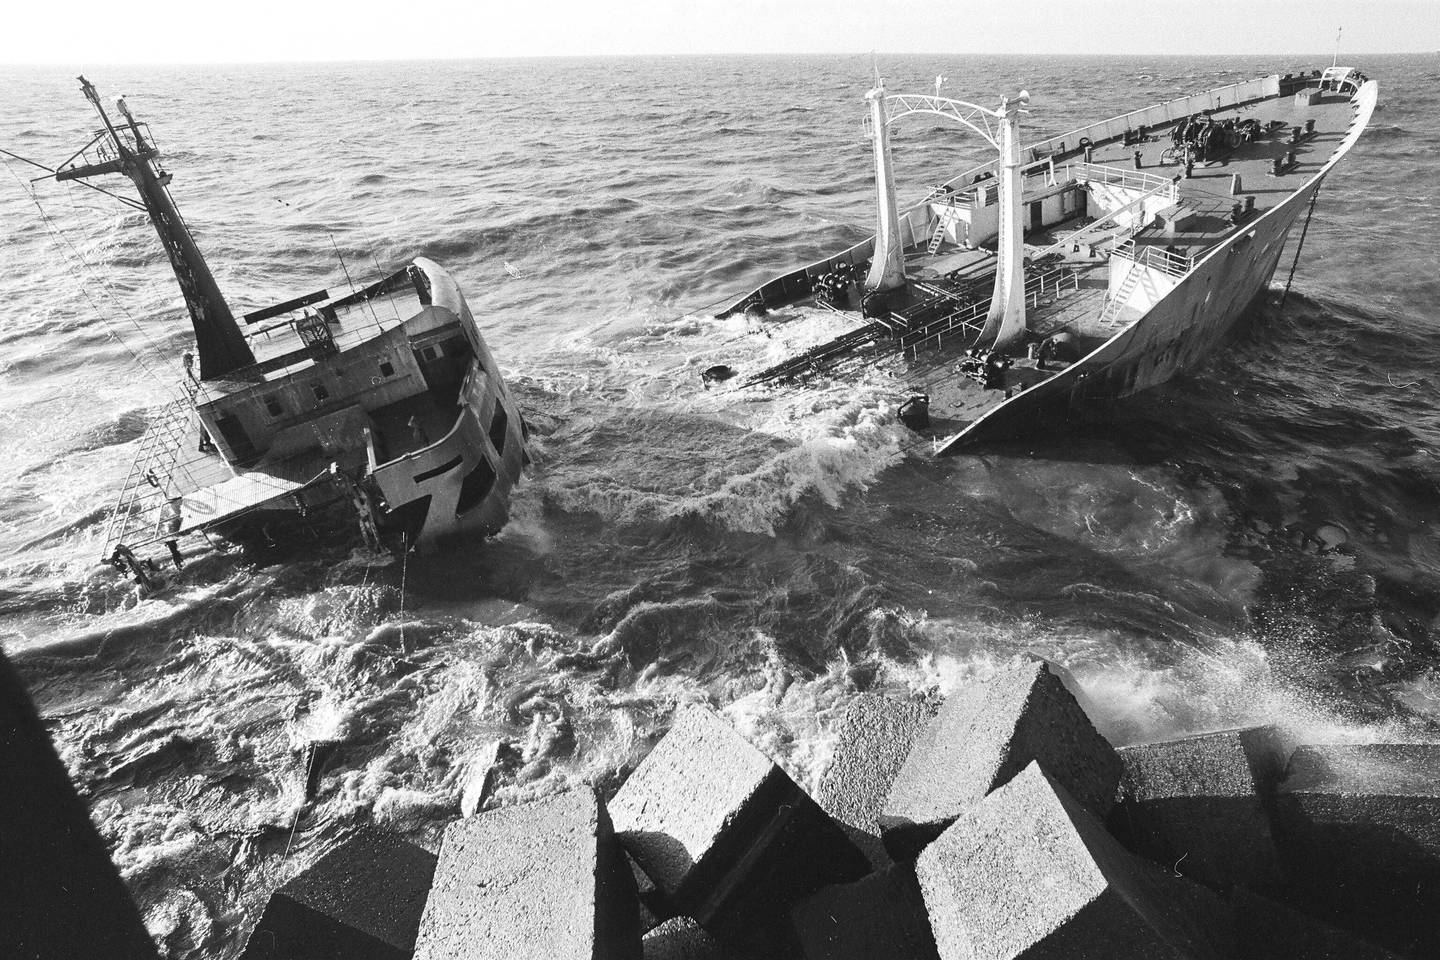  Britų tanklaivis su mazutu rėžėsi į šiaurinį uosto  molą.<br> B.Aleknavičiaus nuotr.